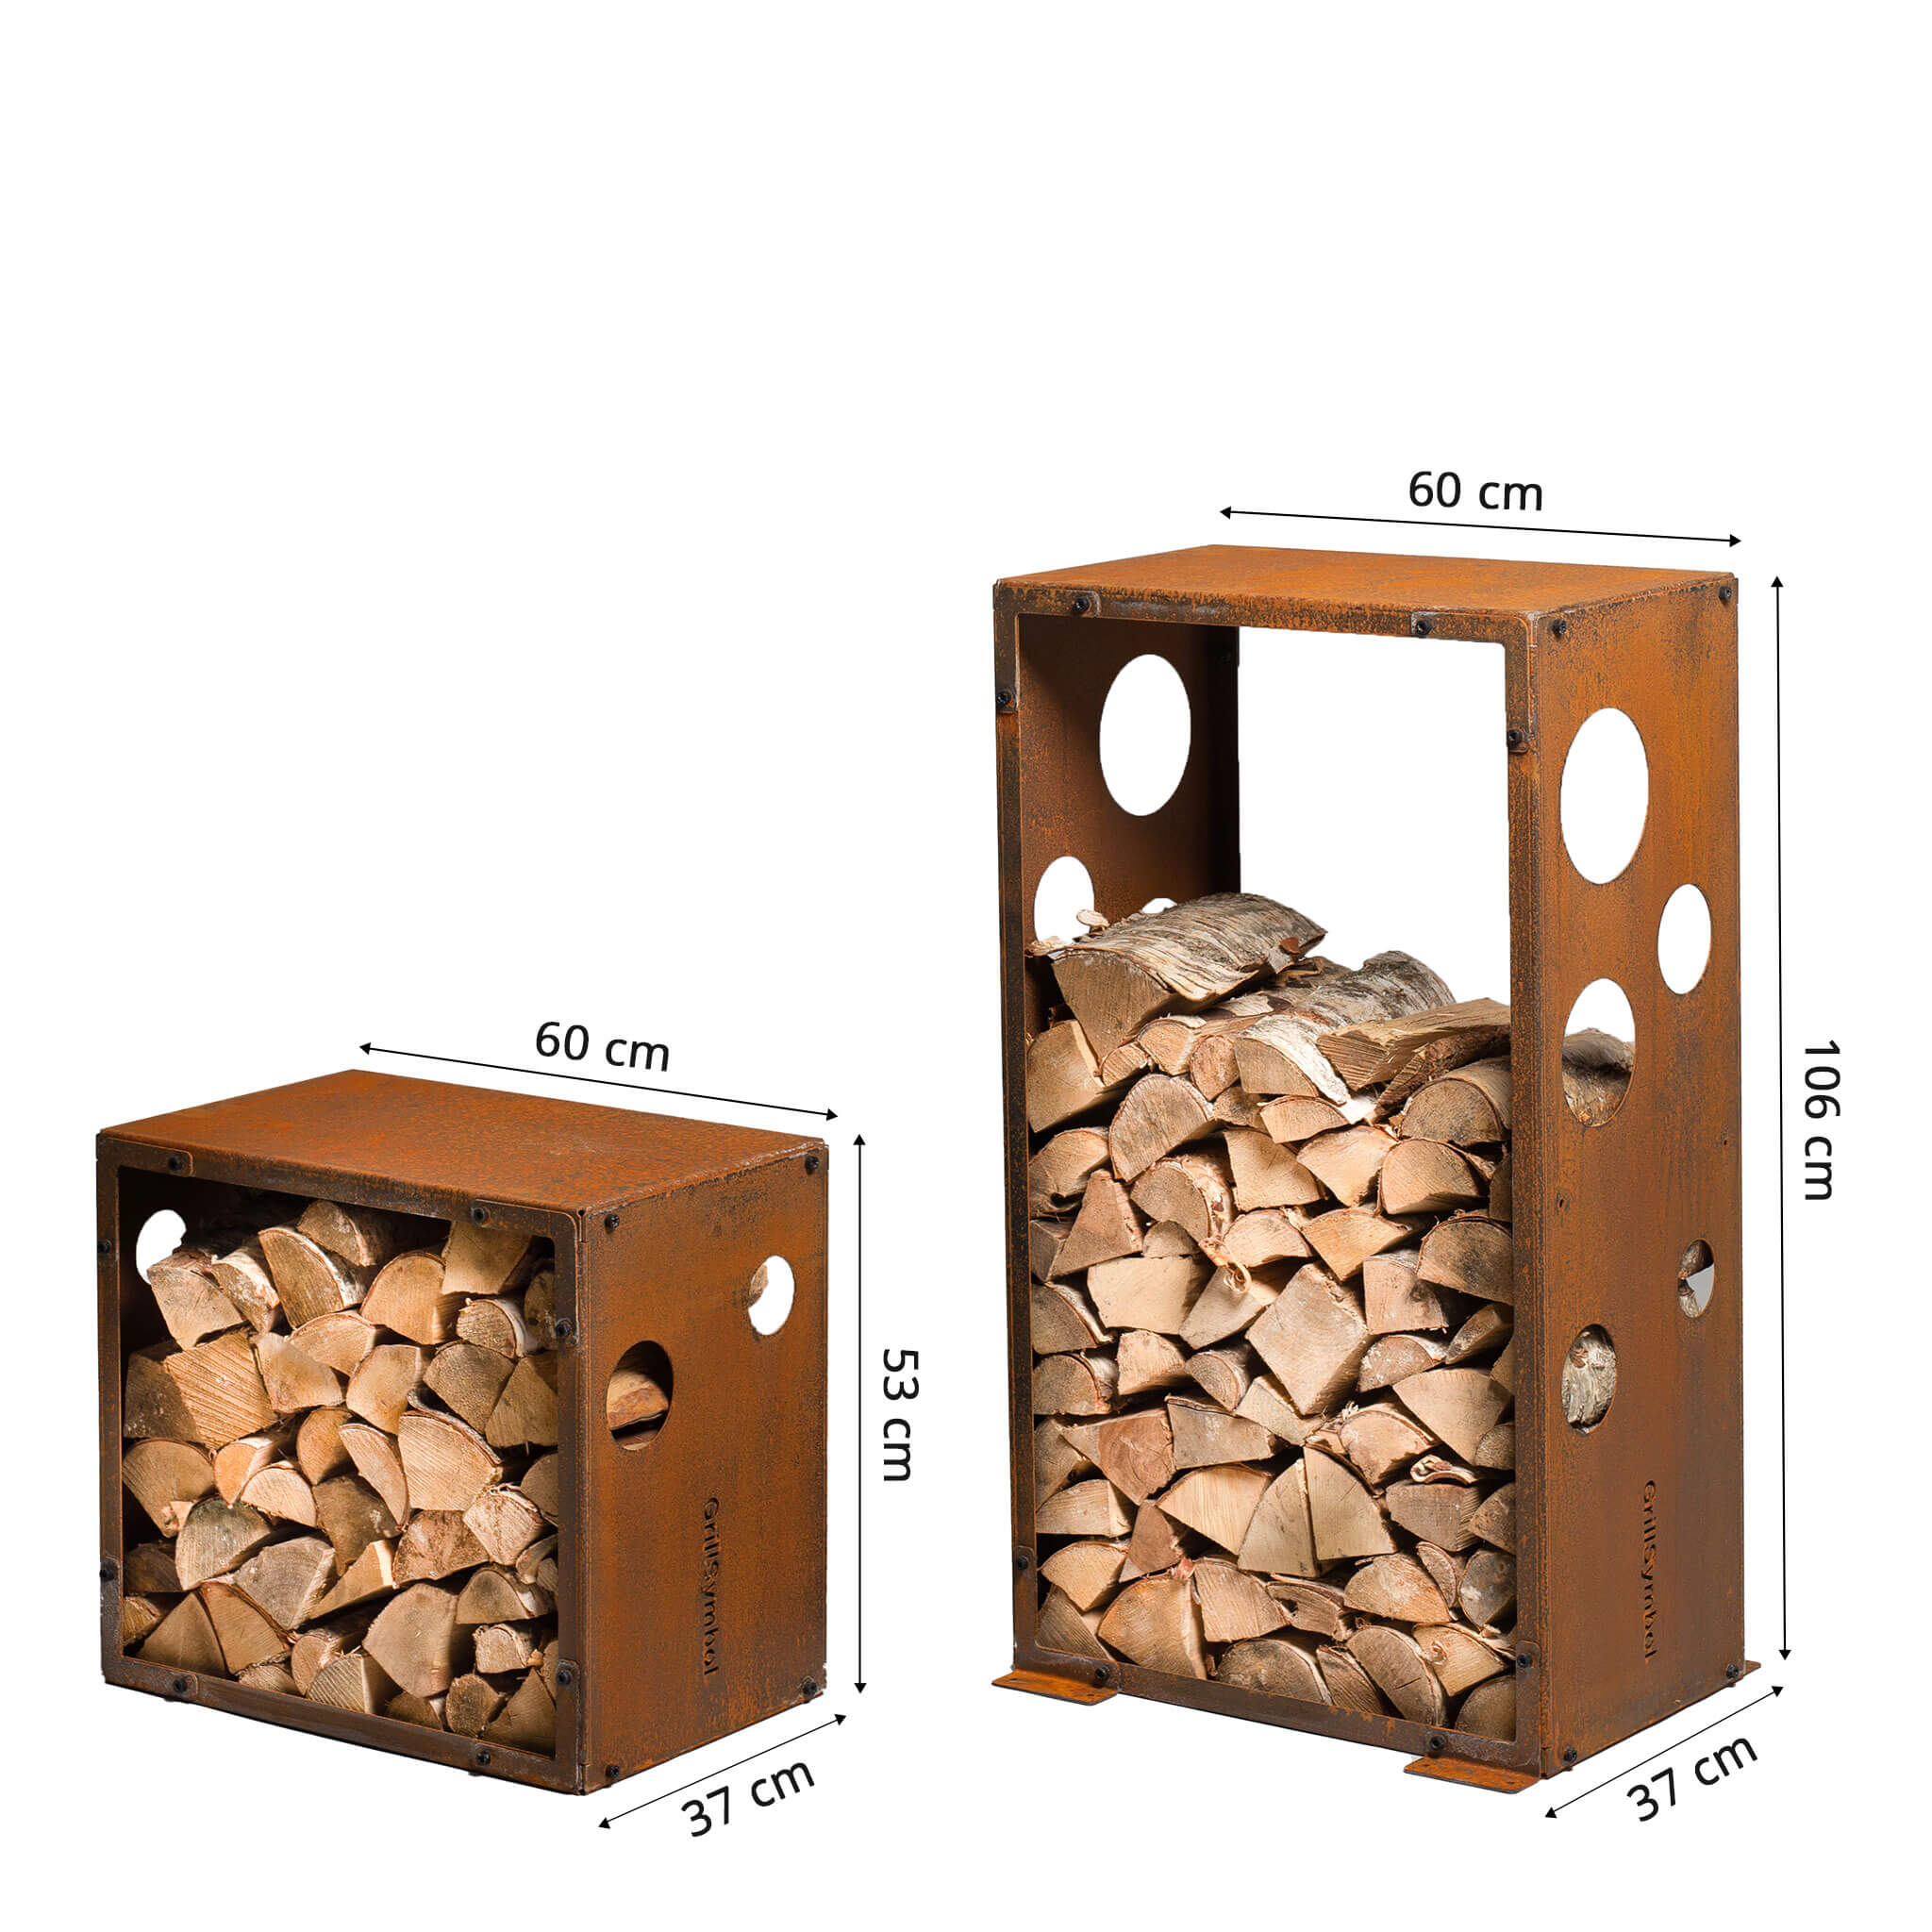 GrillSymbol Corten Steel WoodStock Set of 2
(S+M sizes)